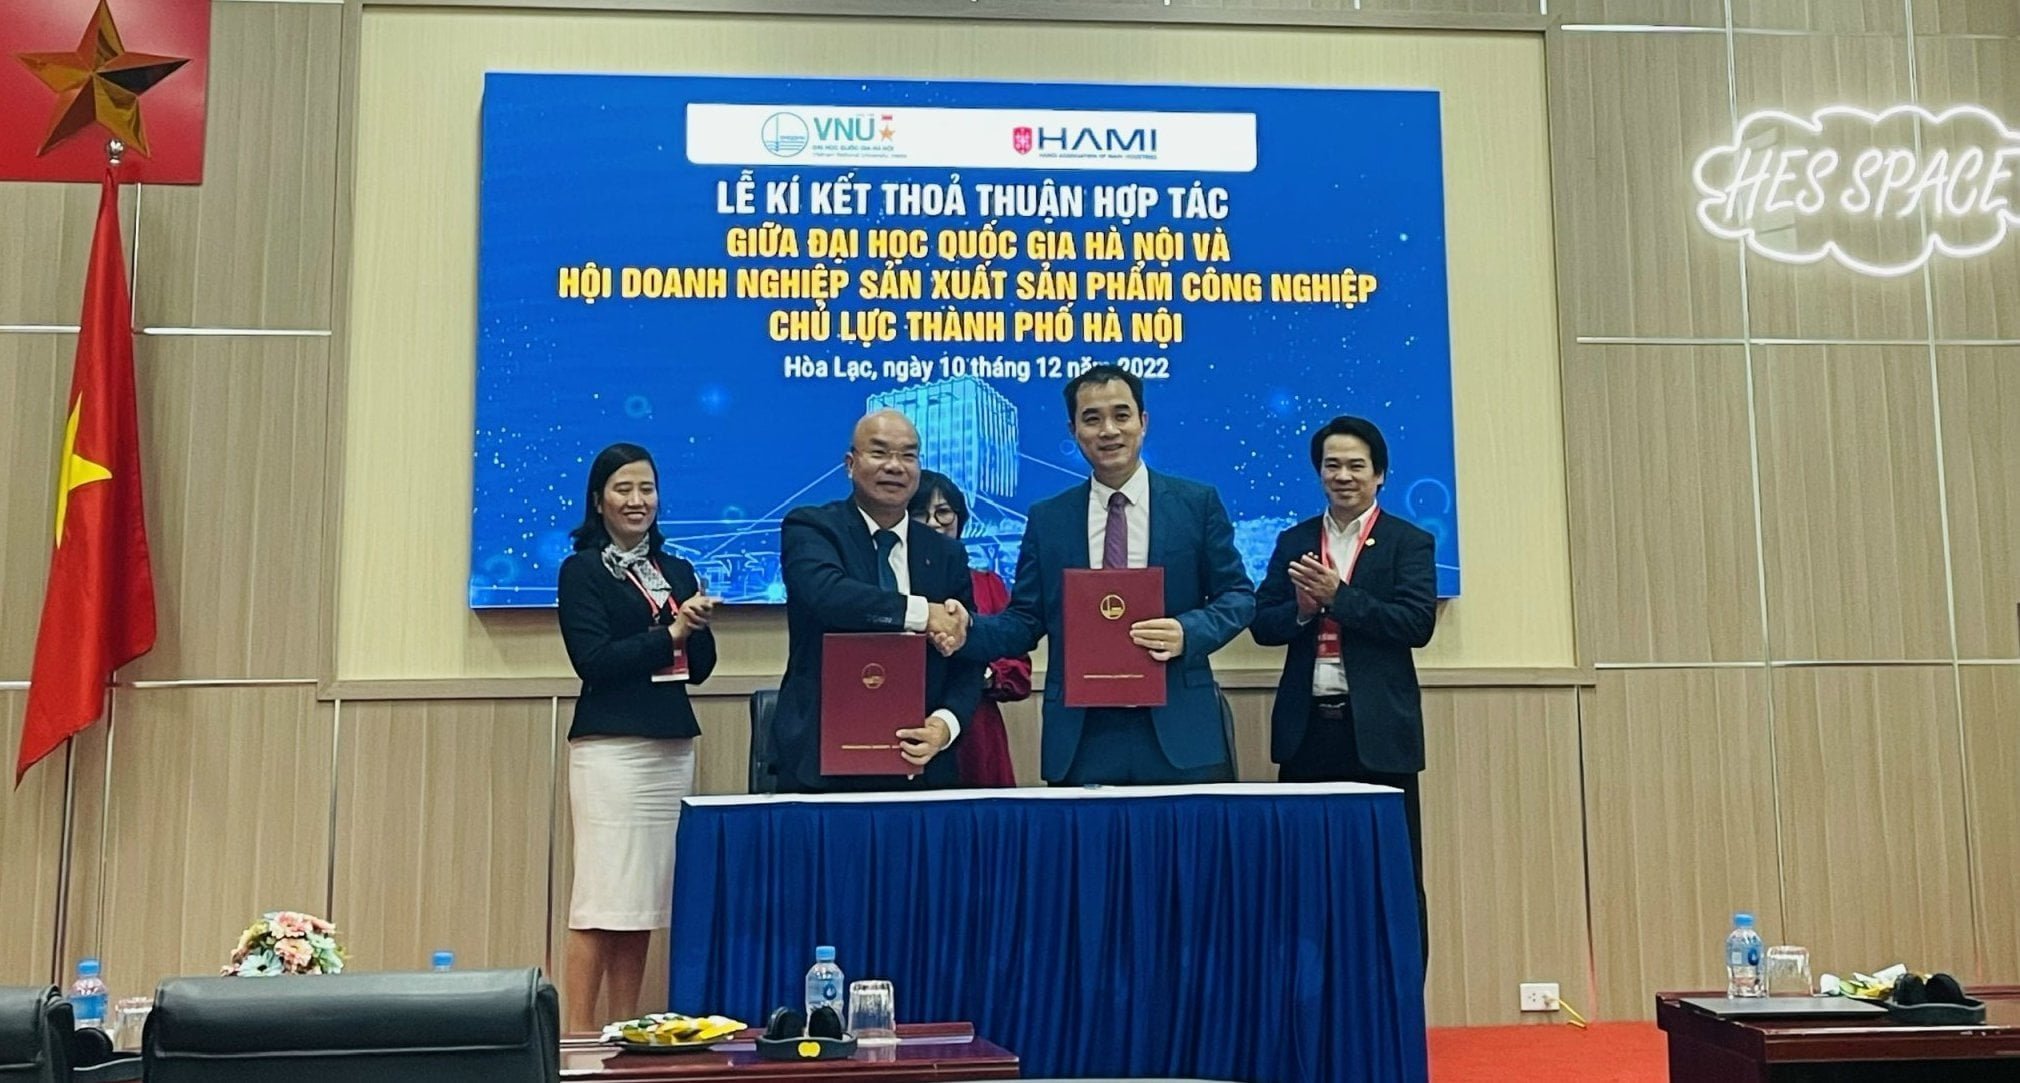 (Tiếng Việt) SPCNCL Hà Nội:Phó Chủ tịch Hội công nghiệp chủ lực HAMI ký kết thoả thuận hợp tác với Đại học Quốc gia Hà Nội